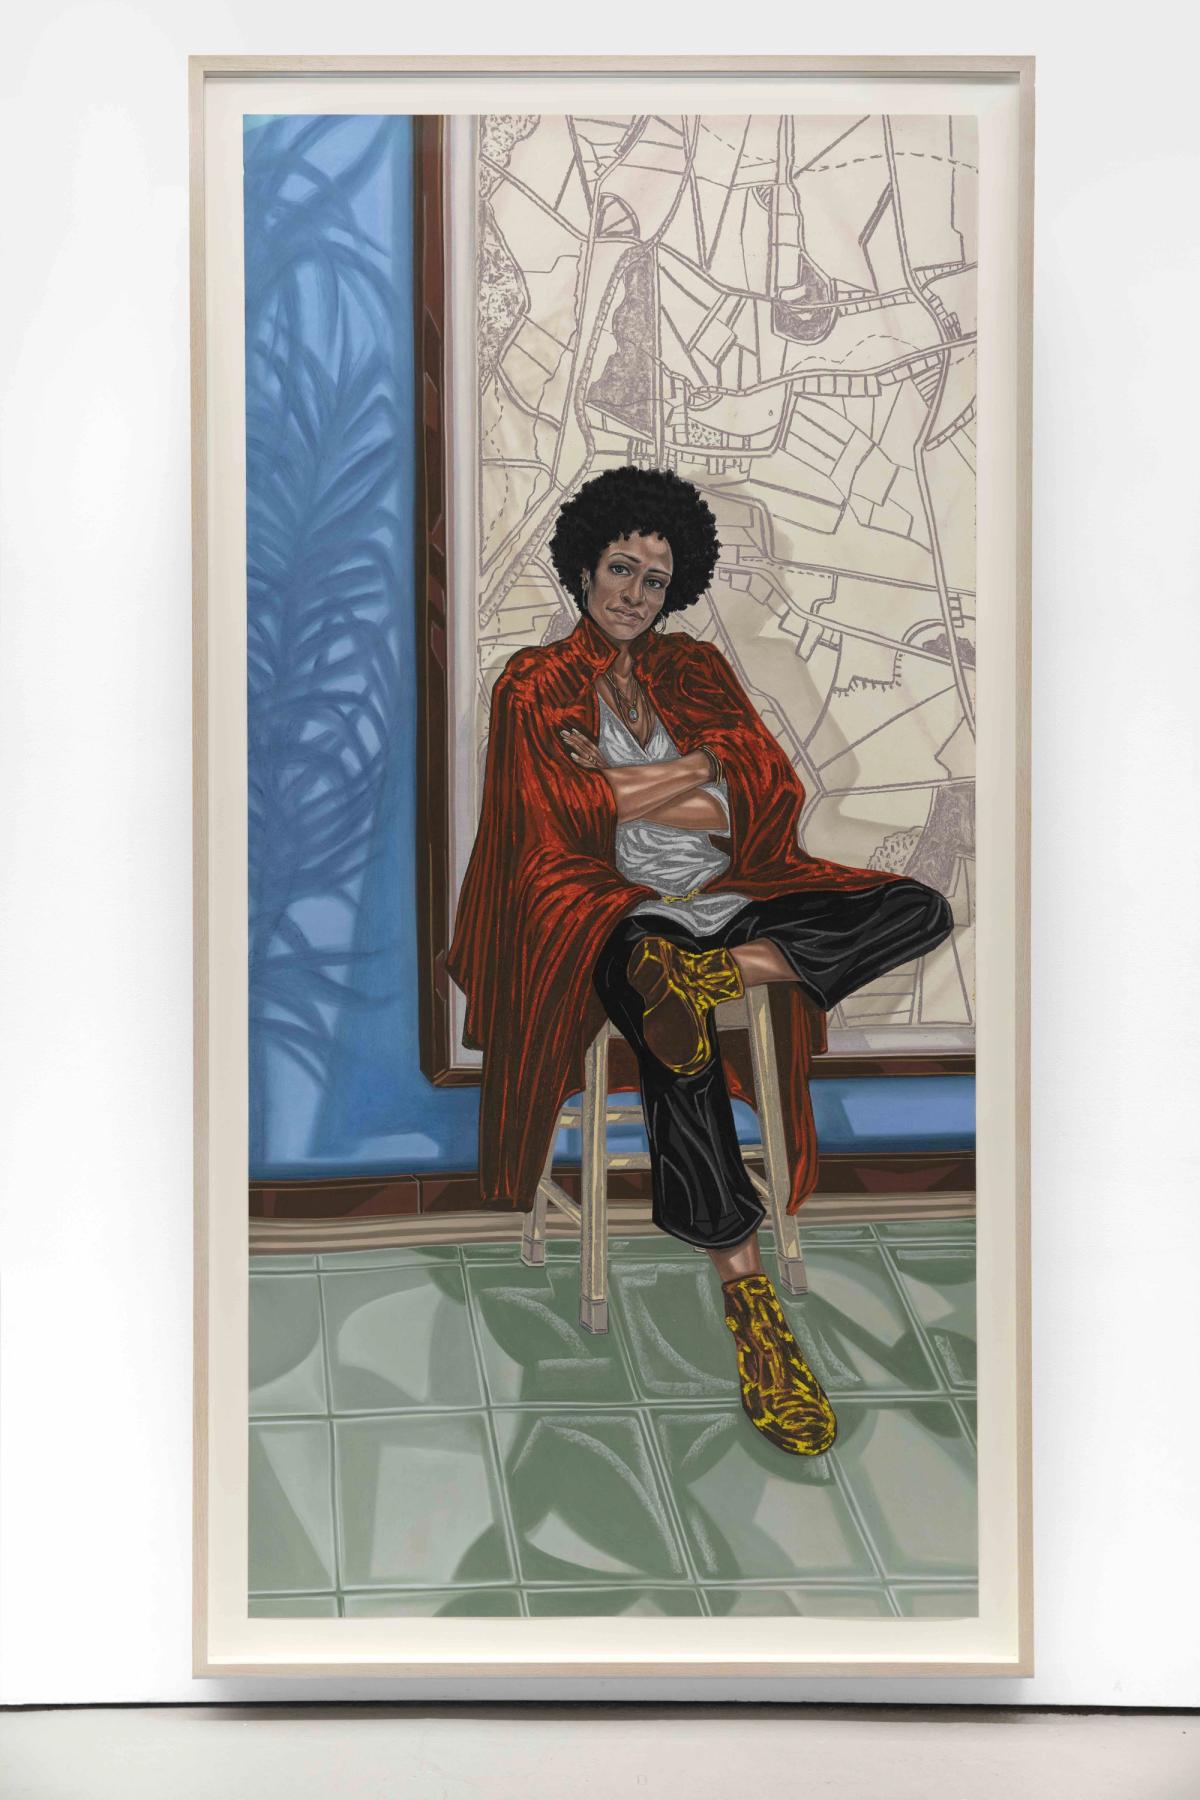 'Sadie' (Zadie Smith) by Toyin Ojih Odutola courtesy National Portrait Gallery